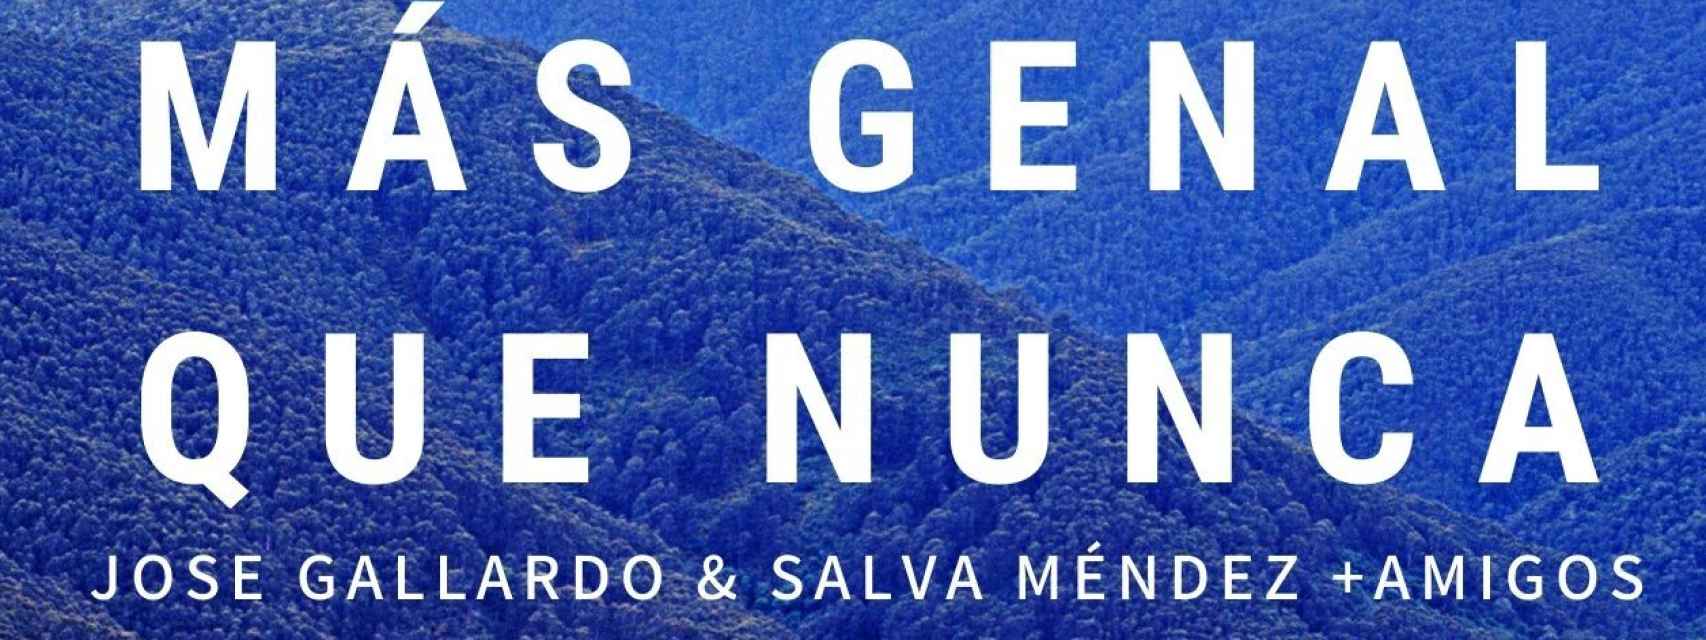 'Más Genal que nunca': Varios músicos se unen para infundir esperanza tras el incendio de Sierra Bermeja.